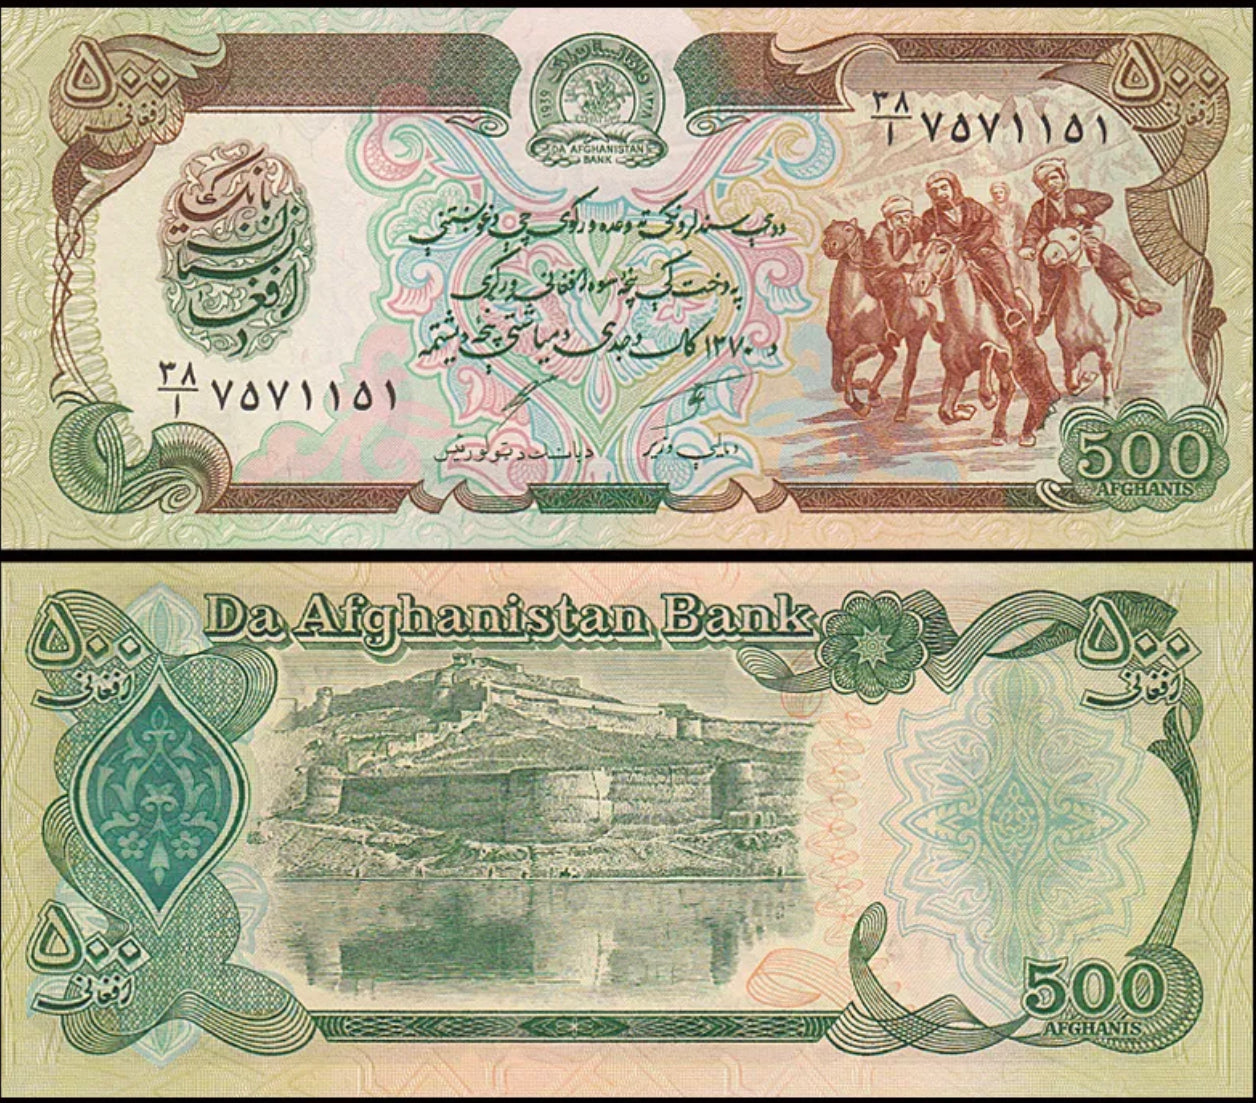 Afghanistan 500 Afghanis, ND 1991, P-60, UNC